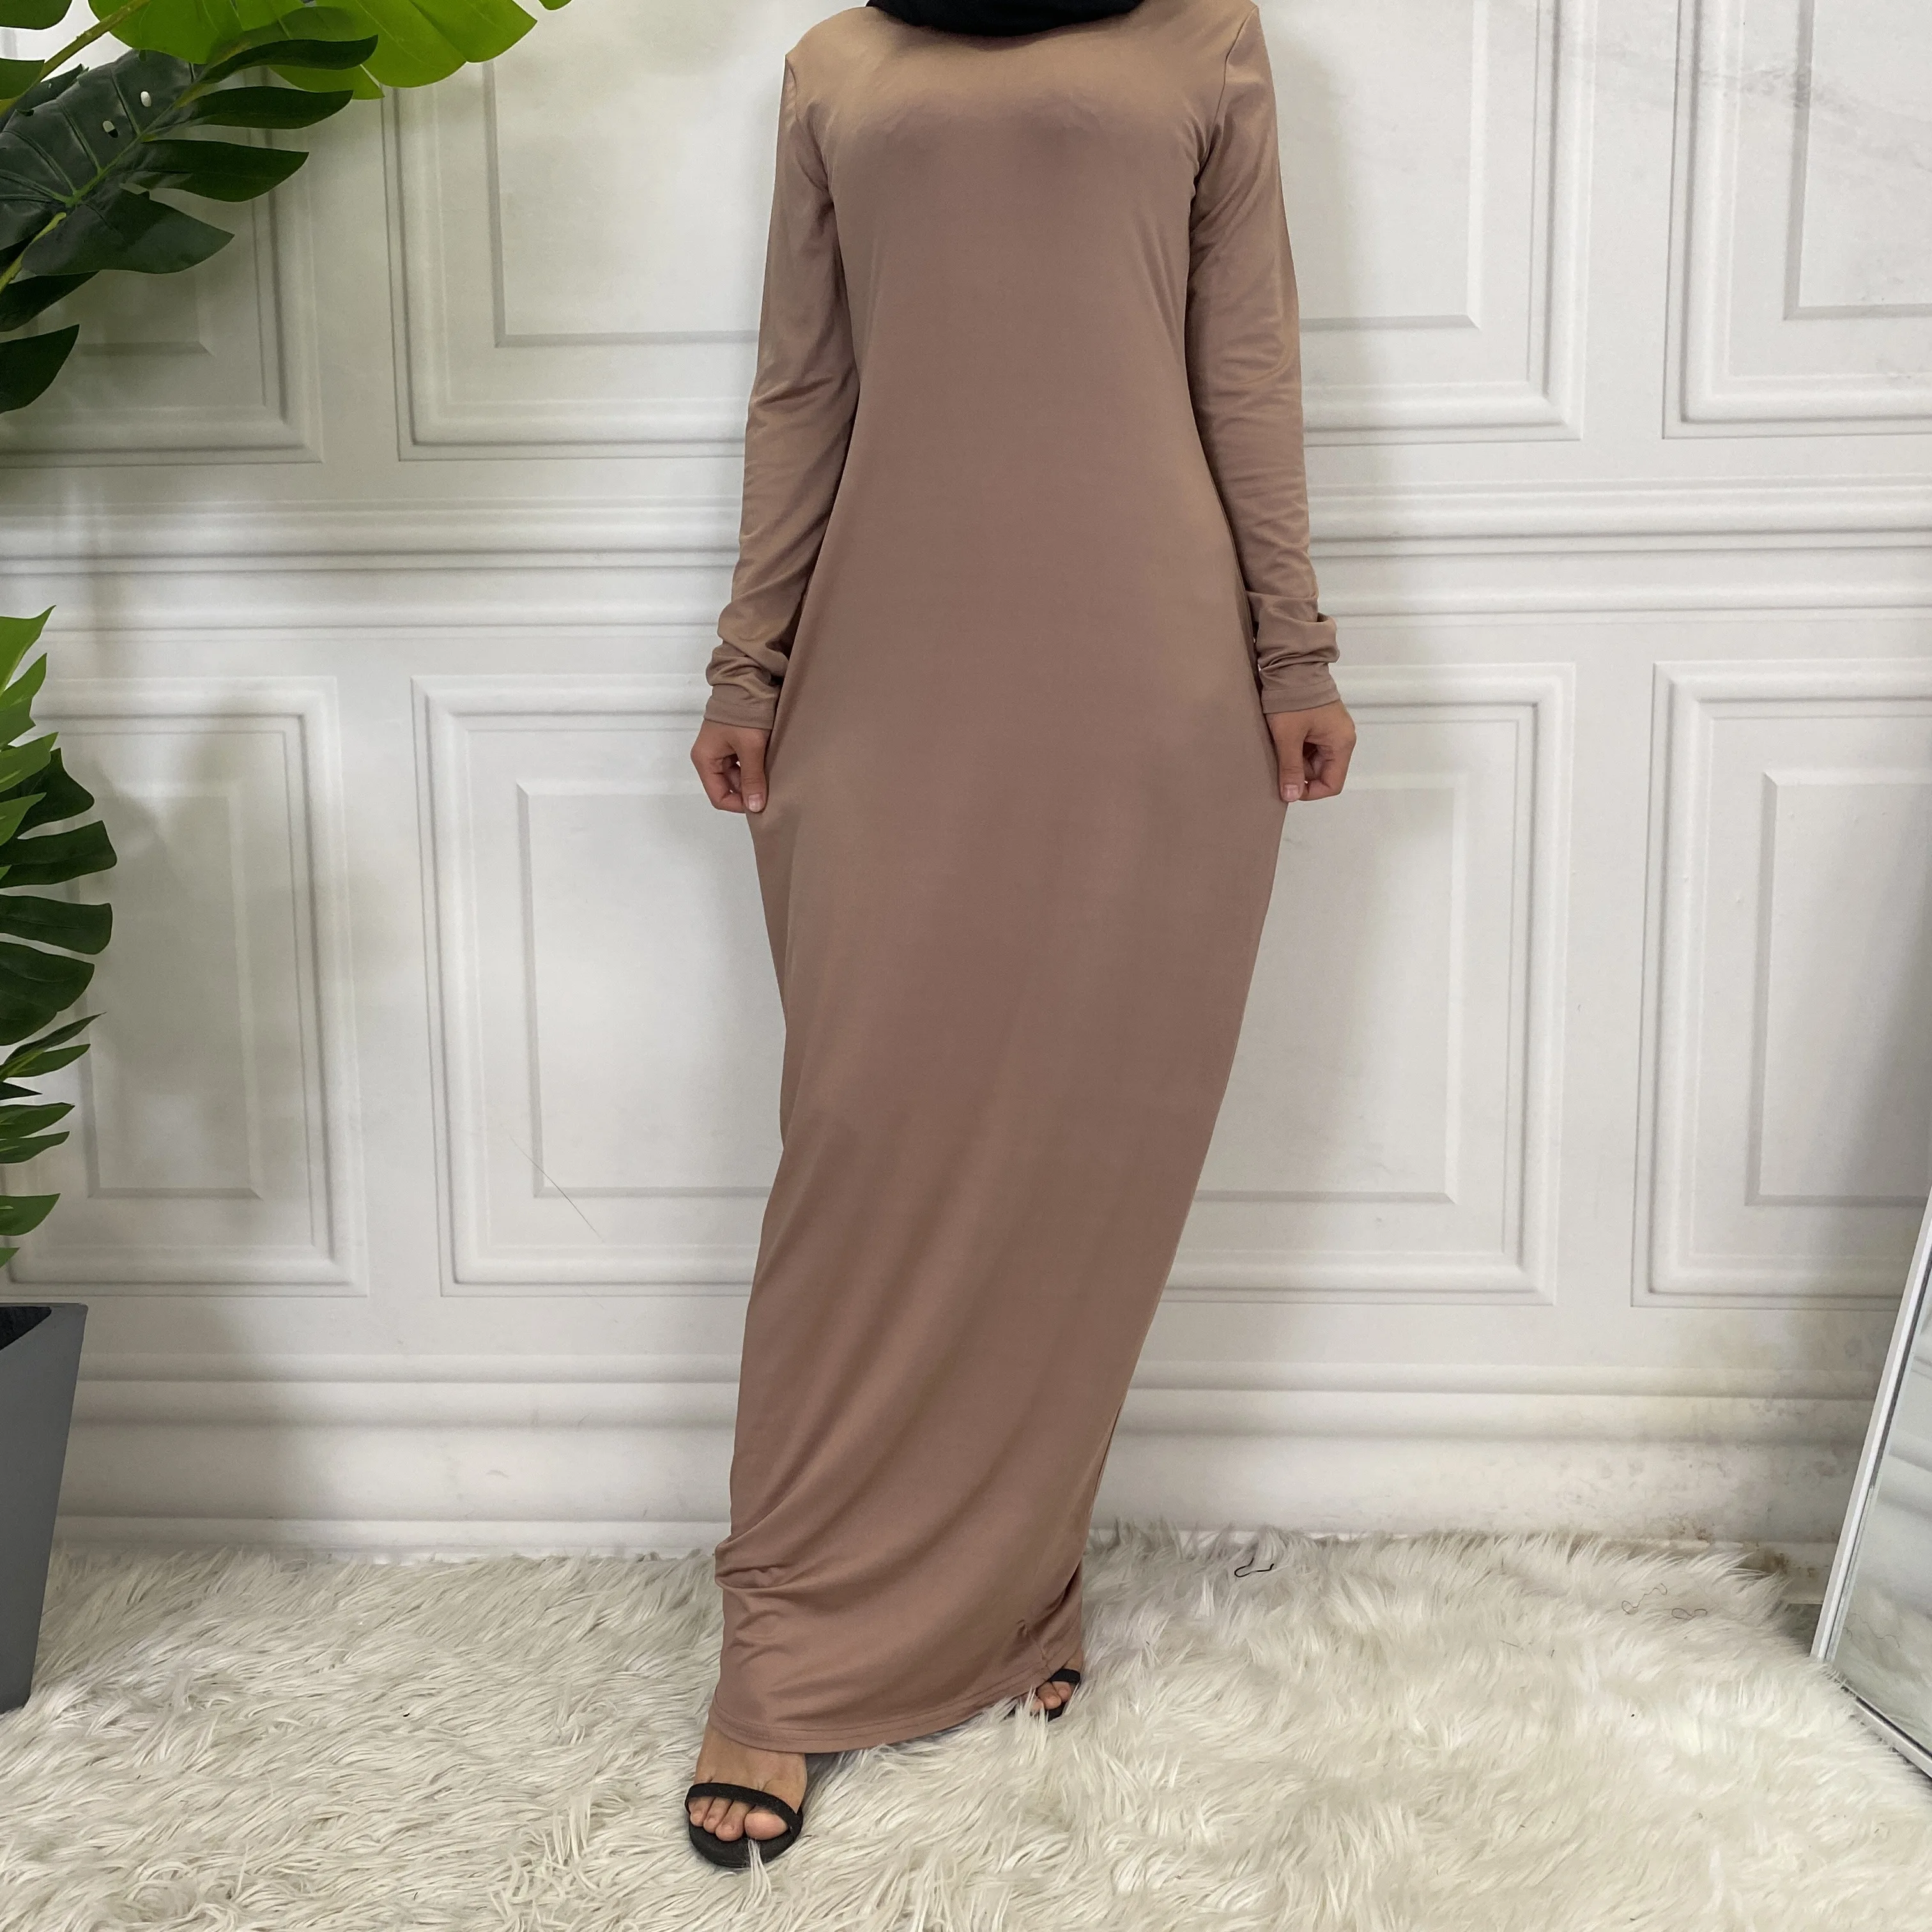 Summer Skirt For Ladies New Inner Dress Muslim Casual Dress For Women Clothing Islamic Abaya Long Sleeve Maxi Slim Inner Dress